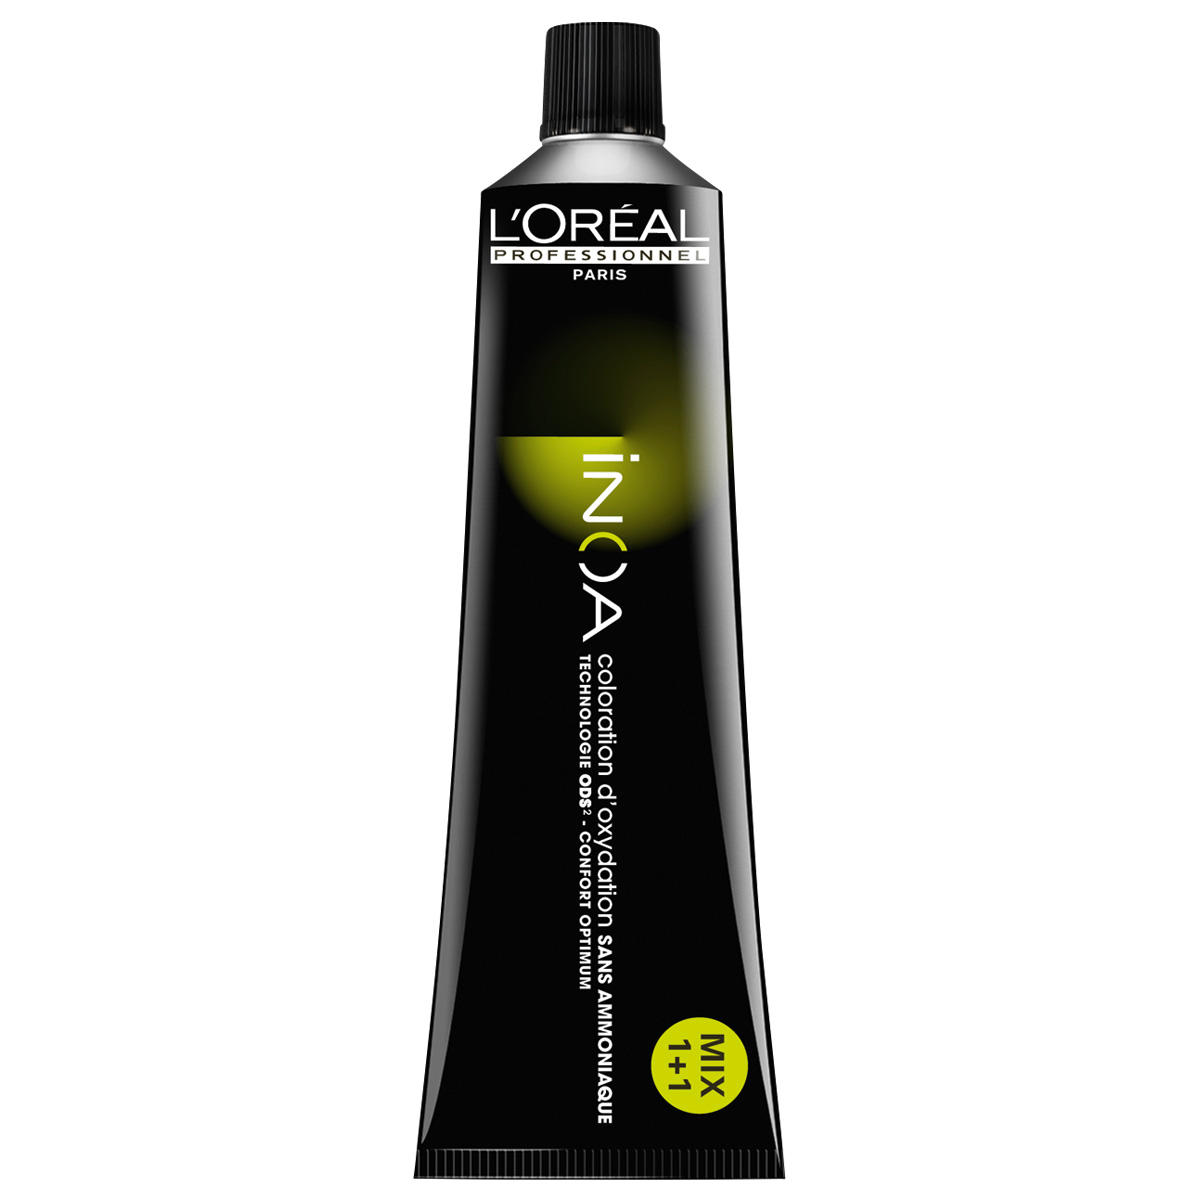 L'Oréal Professionnel Paris Coloration 6.40 Donker blond intensief koper, tube 60 ml